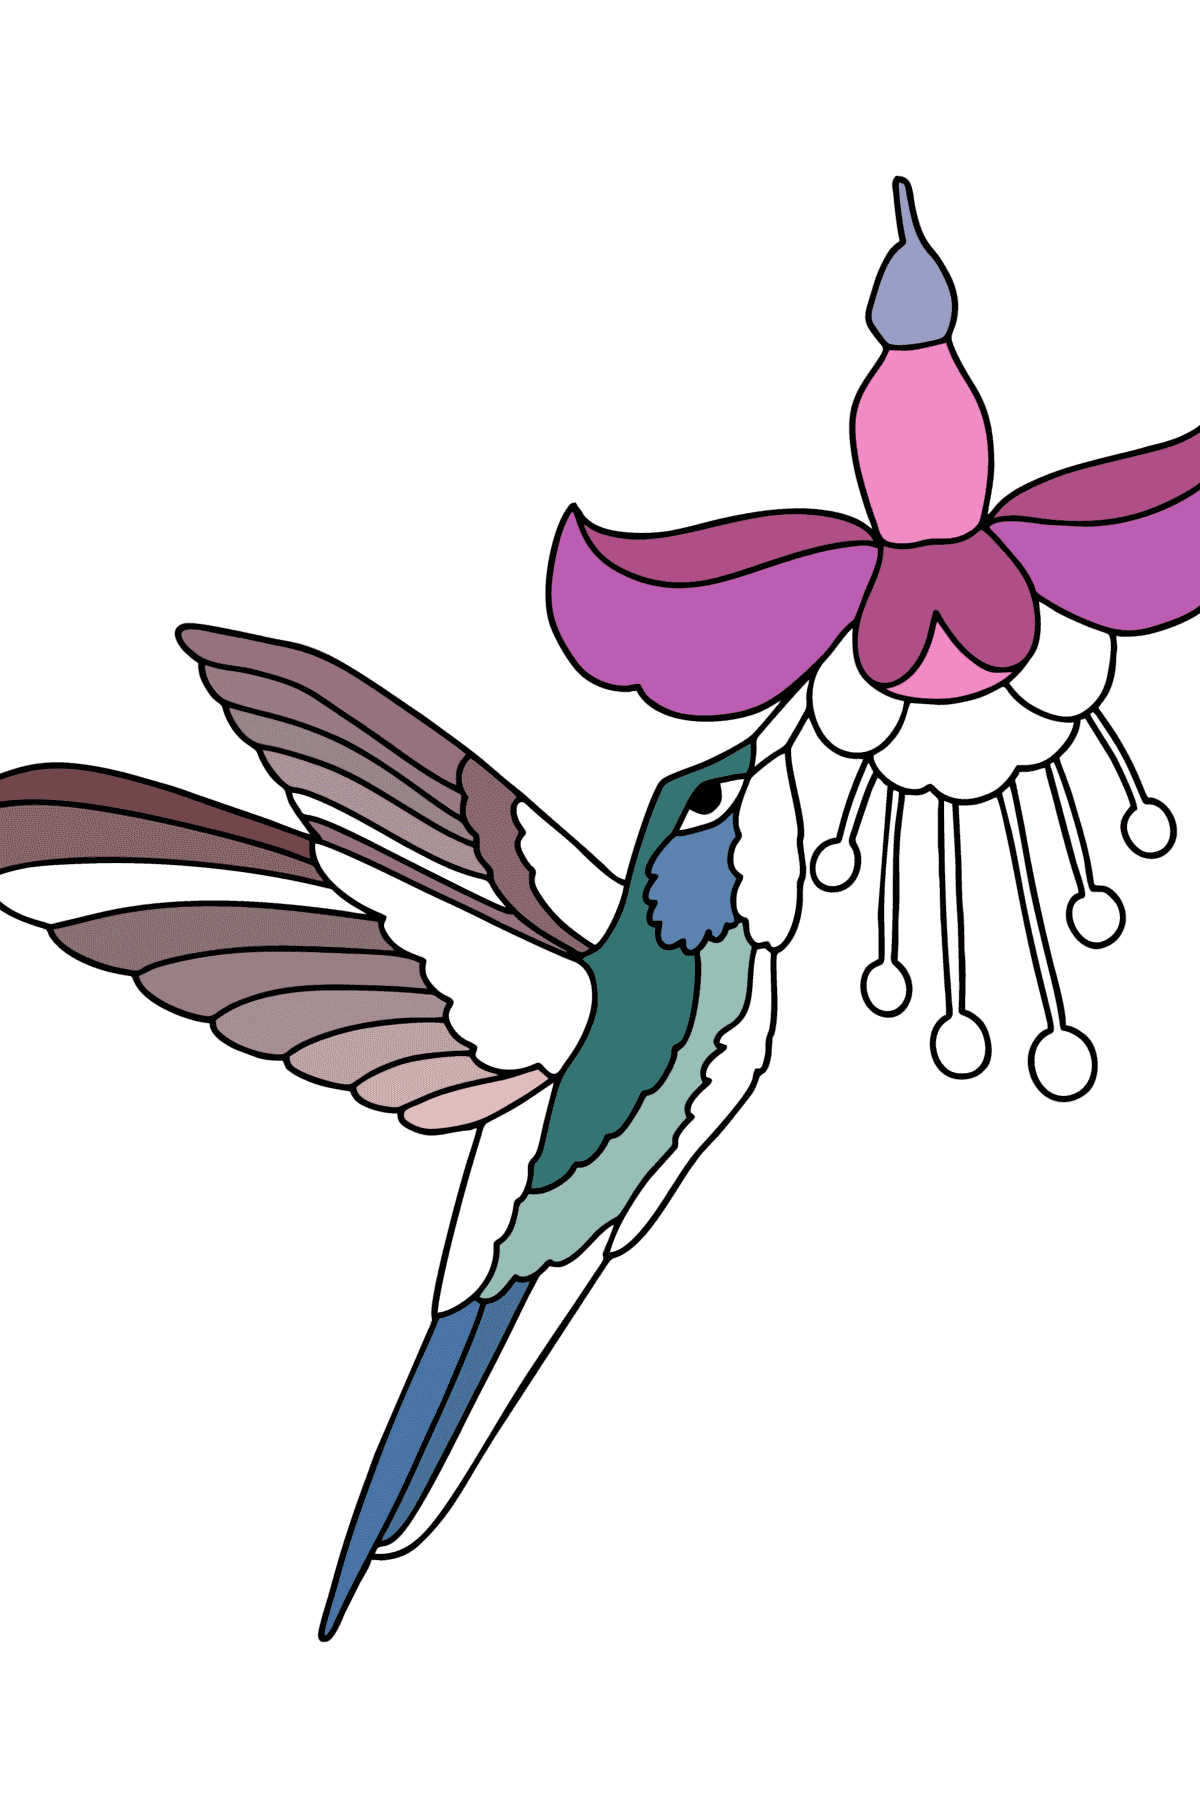 Dibujo Selva de colibrí para colorear - Dibujos para Colorear para Niños